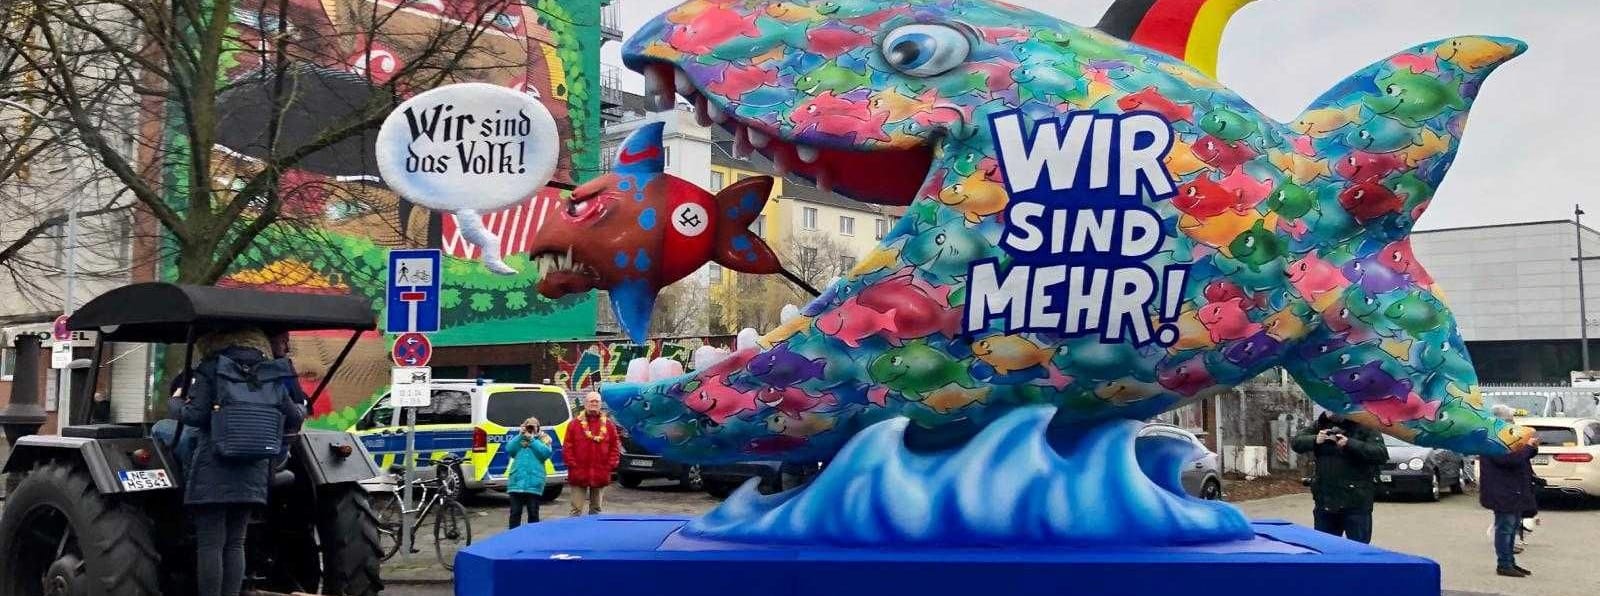 Ein kleiner "rechter" Fisch wird von der Mehrheit der Deutschen verschluckt: "Wir sind mehr", steht auf dem Großen. Zudem trägt seine Flosse die Farben der deutschen Nationalflagge.